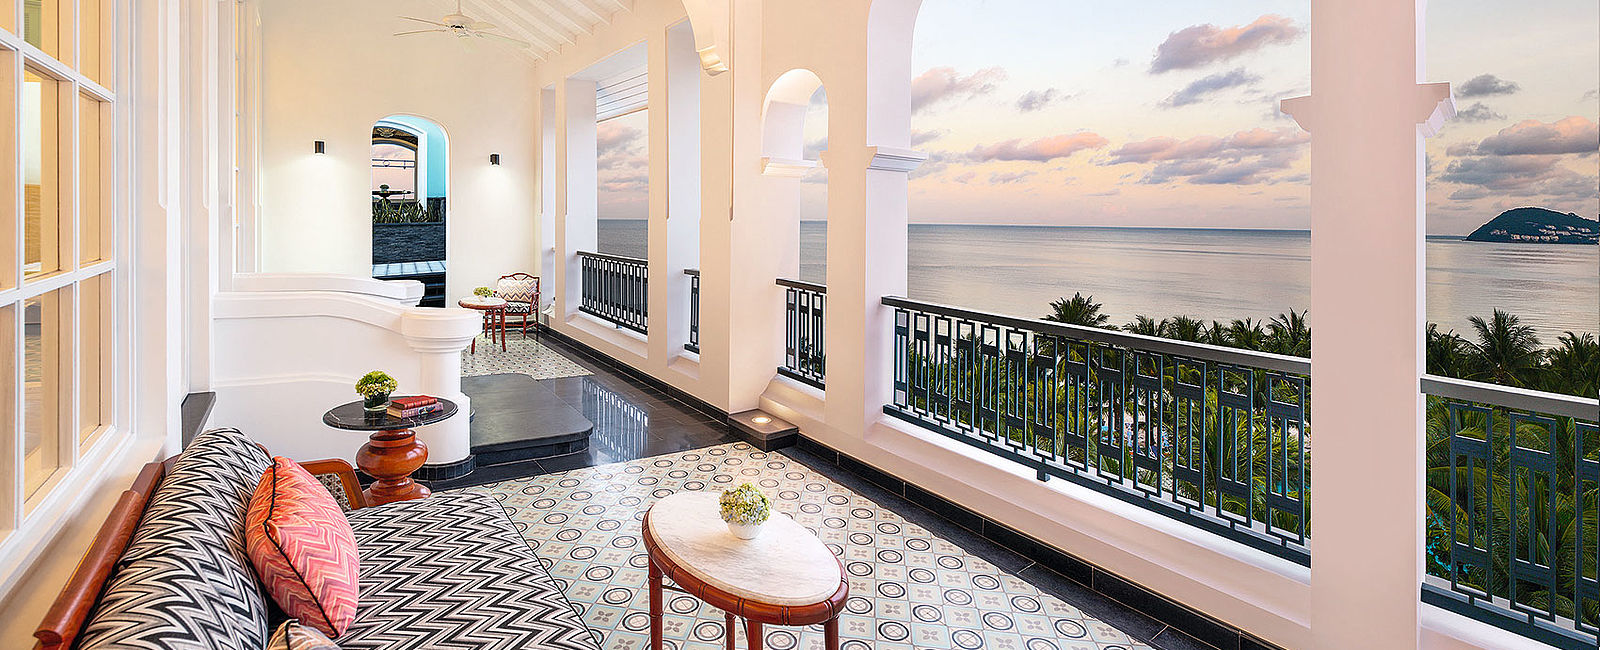 HOTELTEST
 JW Marriott Phu Quoc Emerald Bay Resort & Spa 
 Hoteljuwel im historisch-Hippen Bill-Bensley-Look 